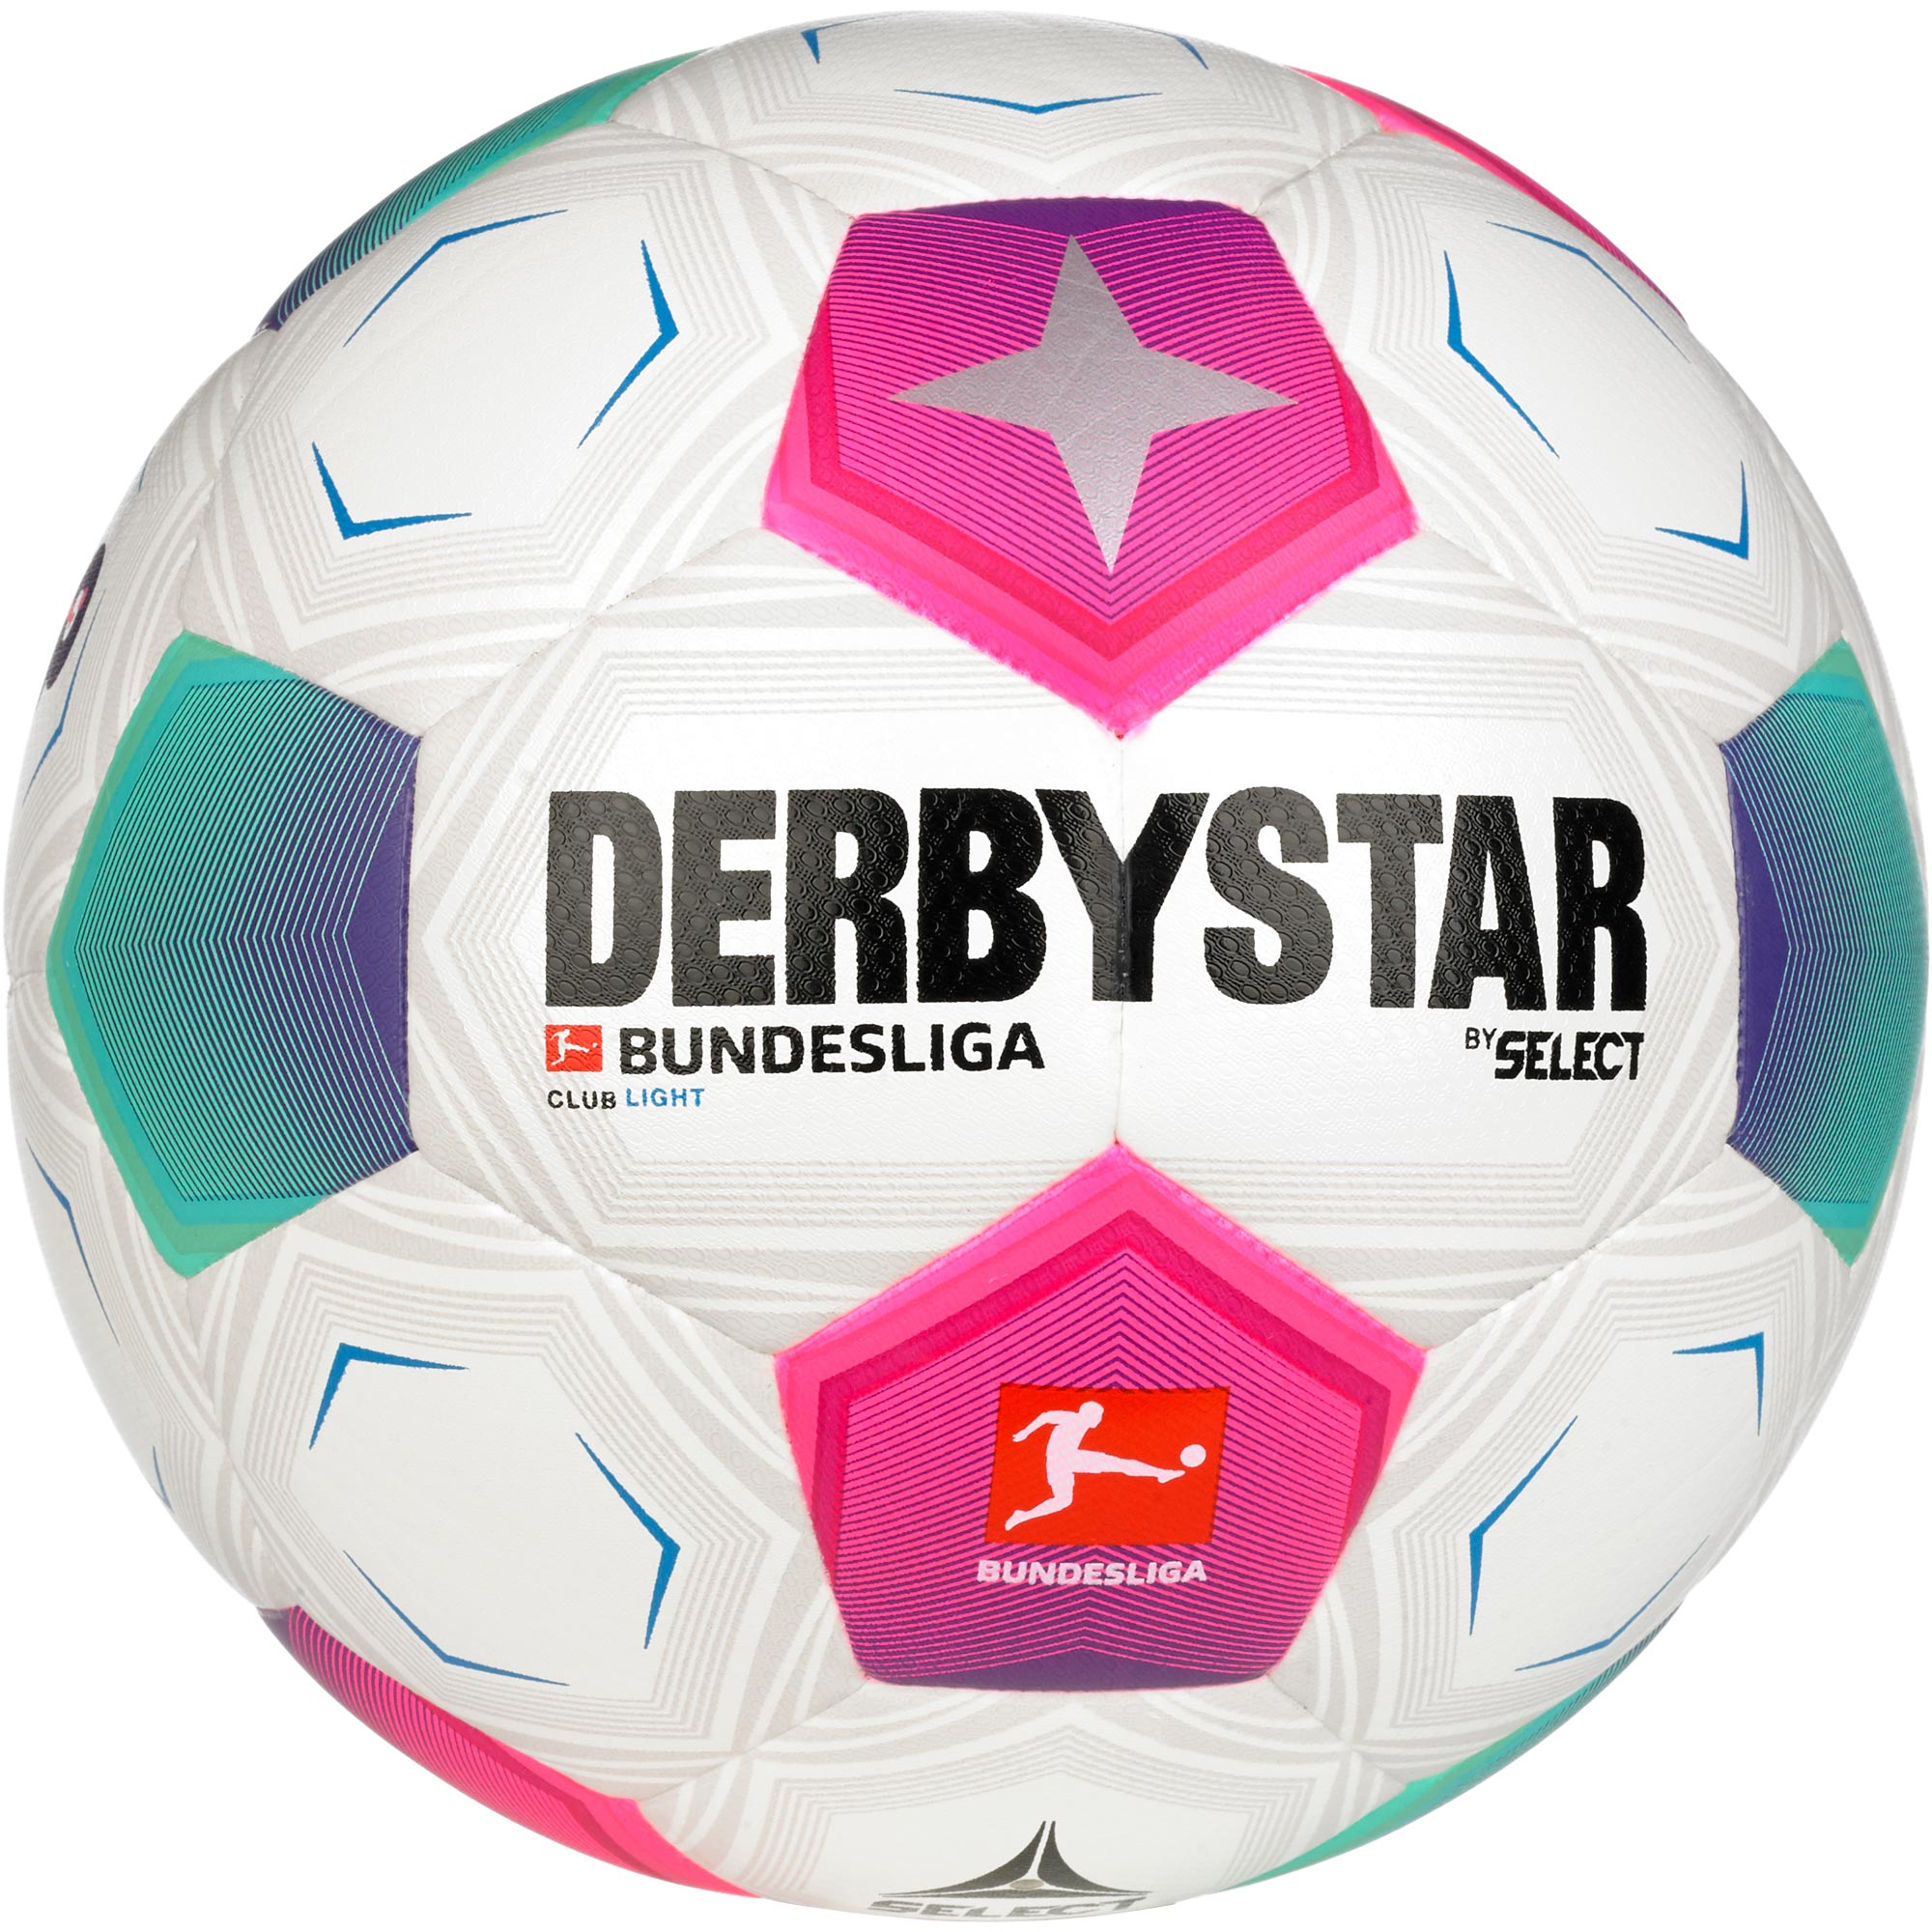 Derbystar Bundesliga Club Light V23